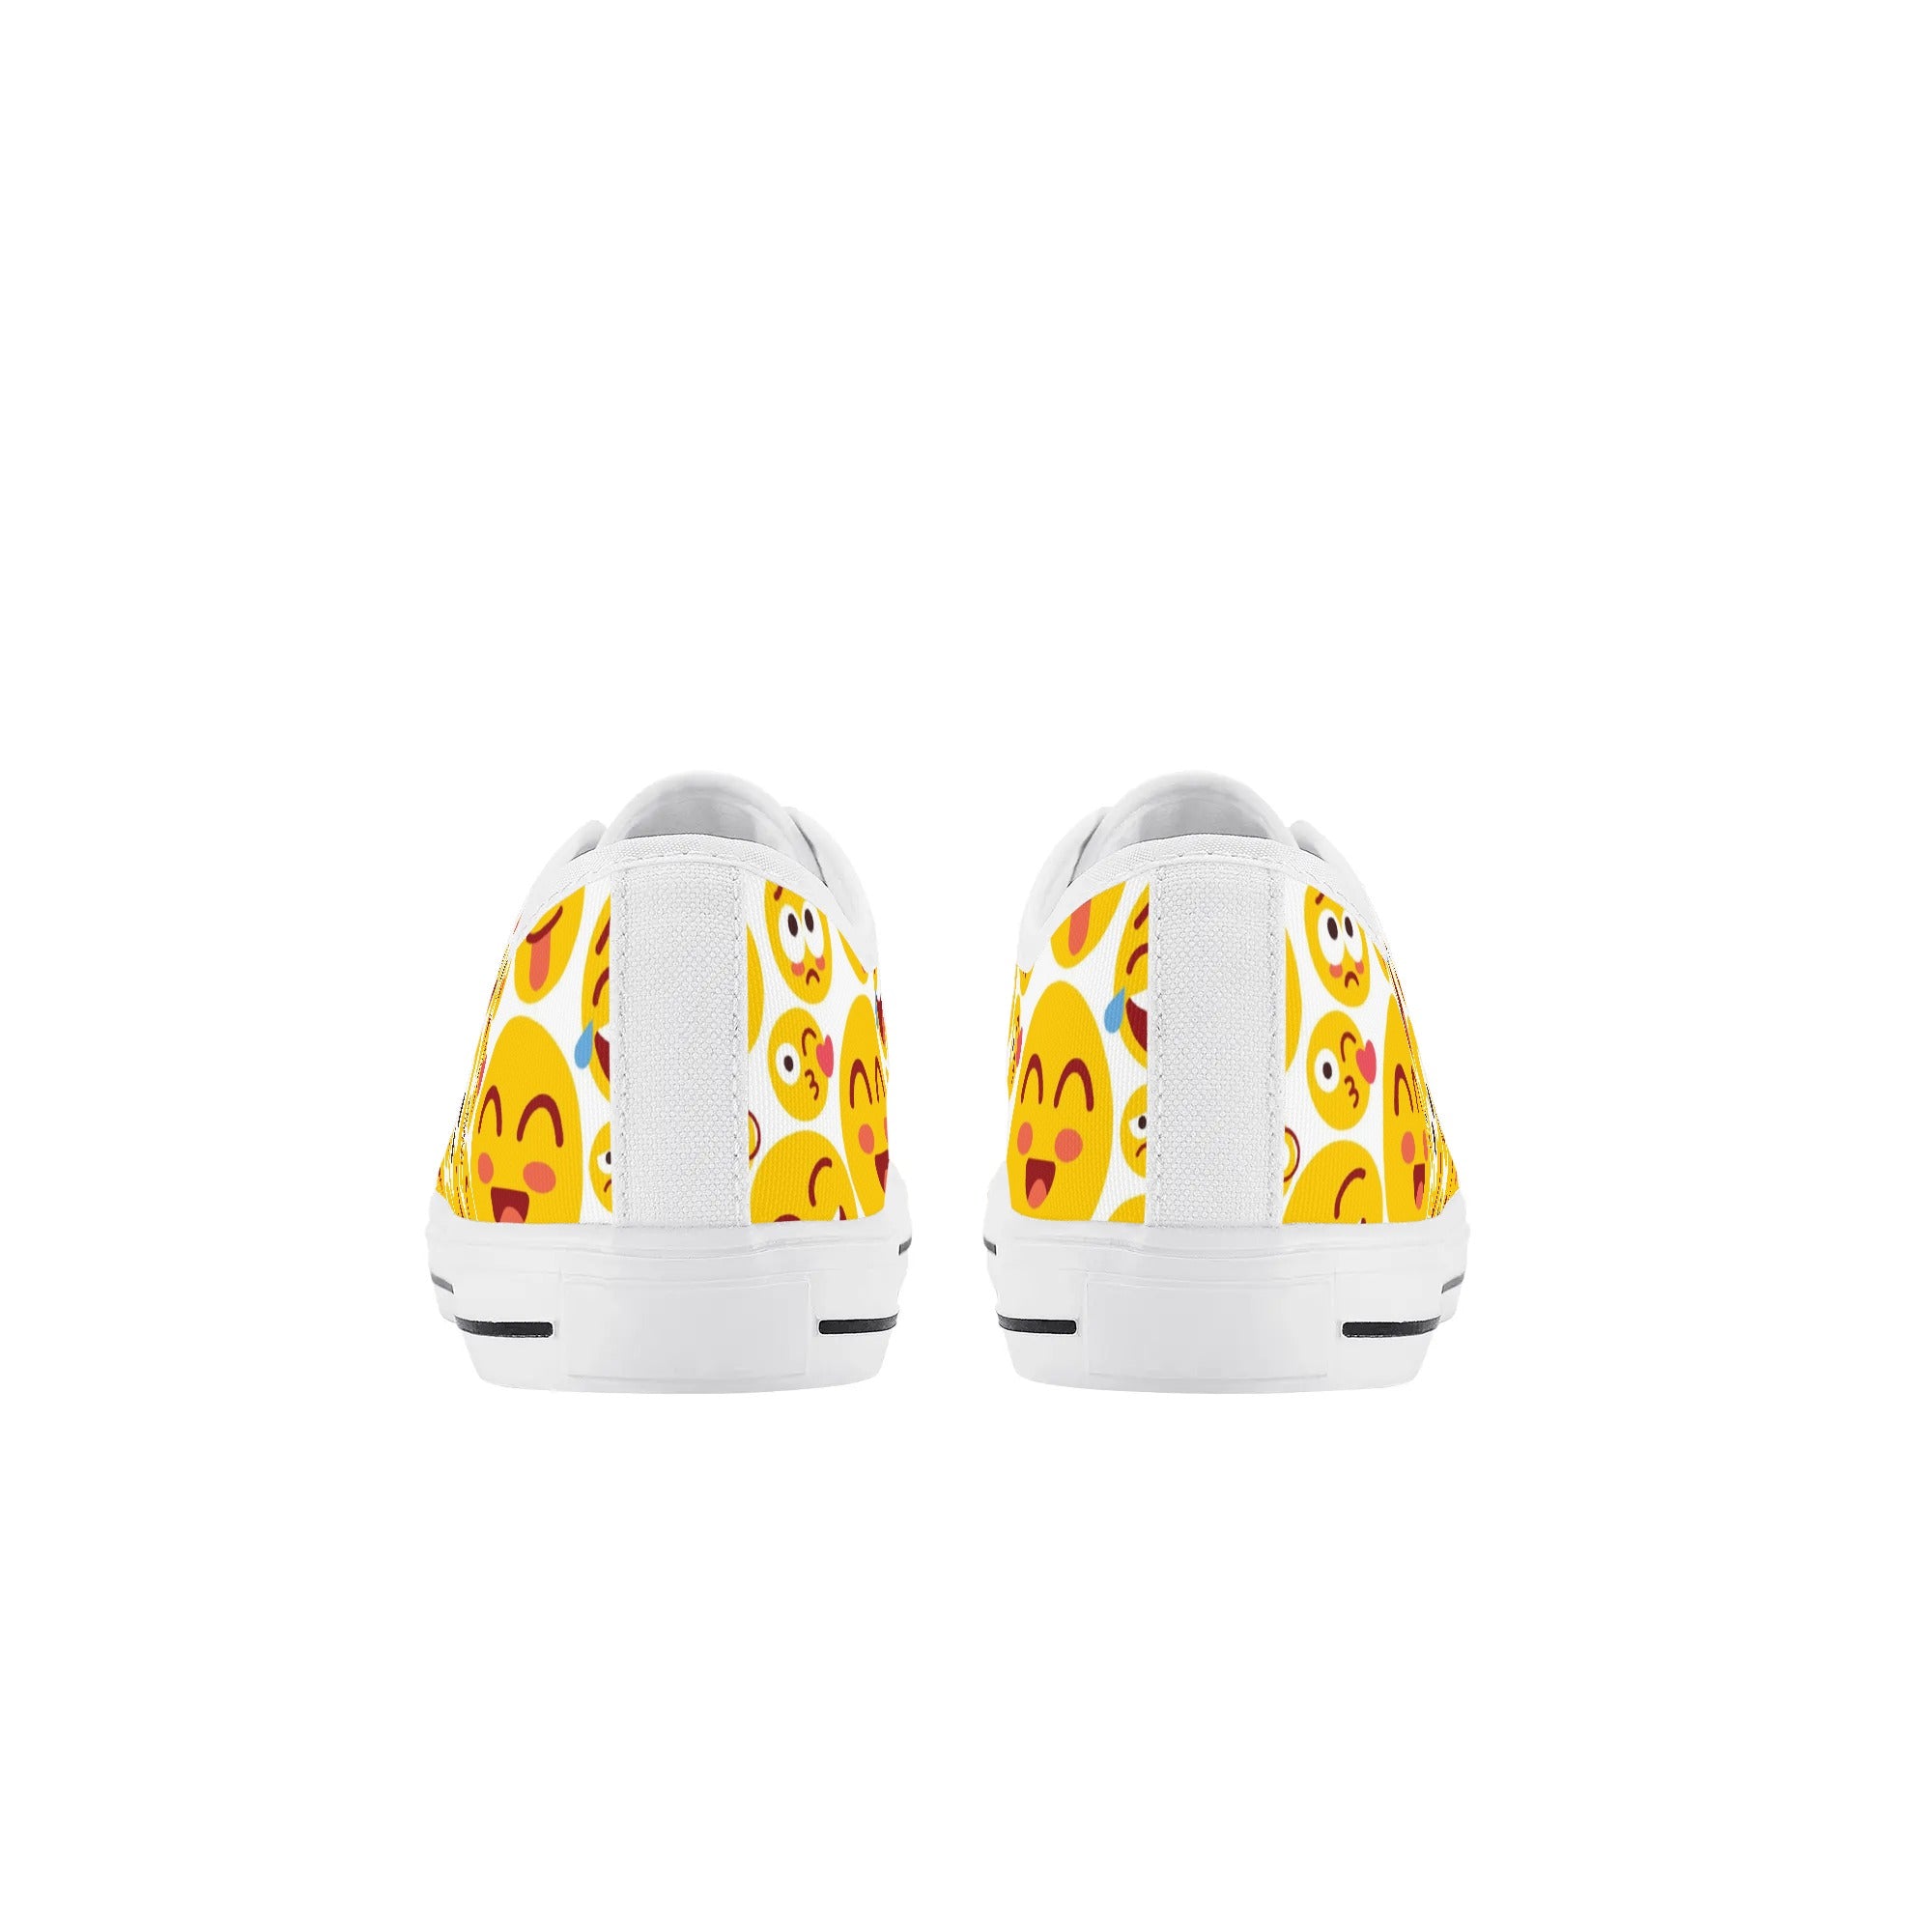 Chaussures basses en toile pour enfants - Emojis